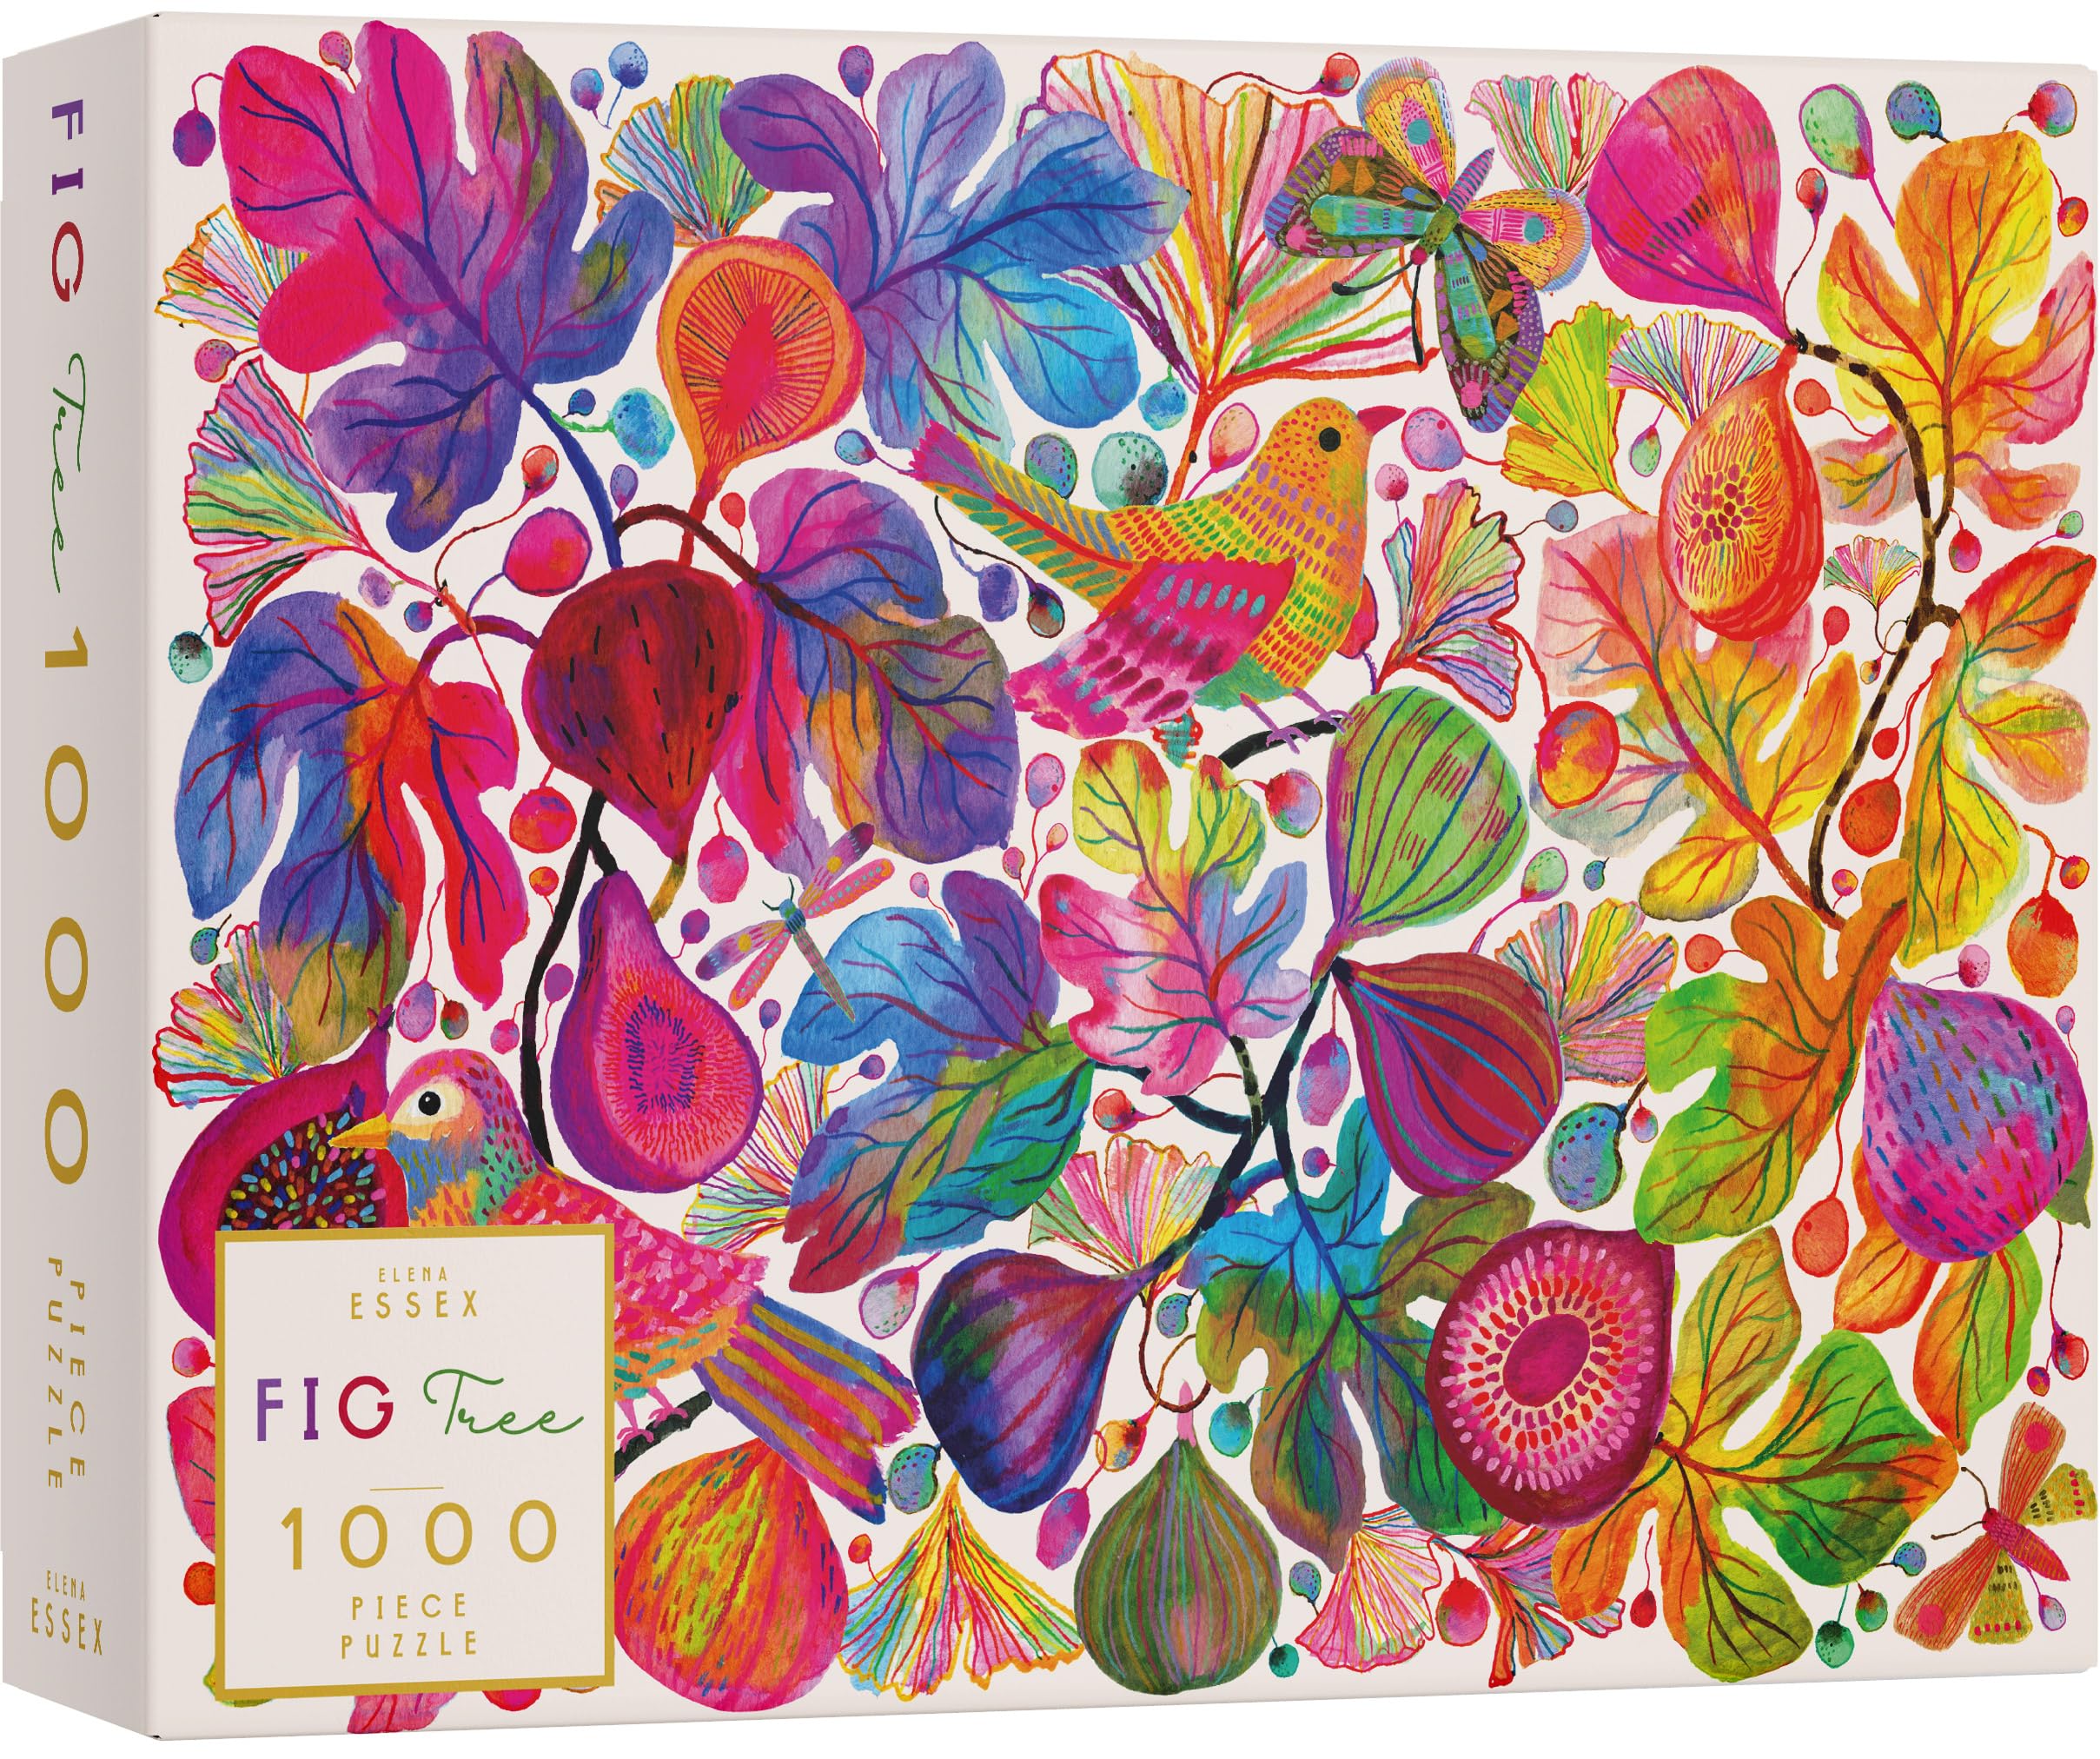 Promo Elena Essex Puzzles 1000 Pieces pour Adultes – Figuier | Puzzle | Puzzles pour Adultes 1000 | Puzzle d´oiseau Floral coloré | Puzzles de 1000 pièces Taille 68x49cm tfrTJHCGm grand